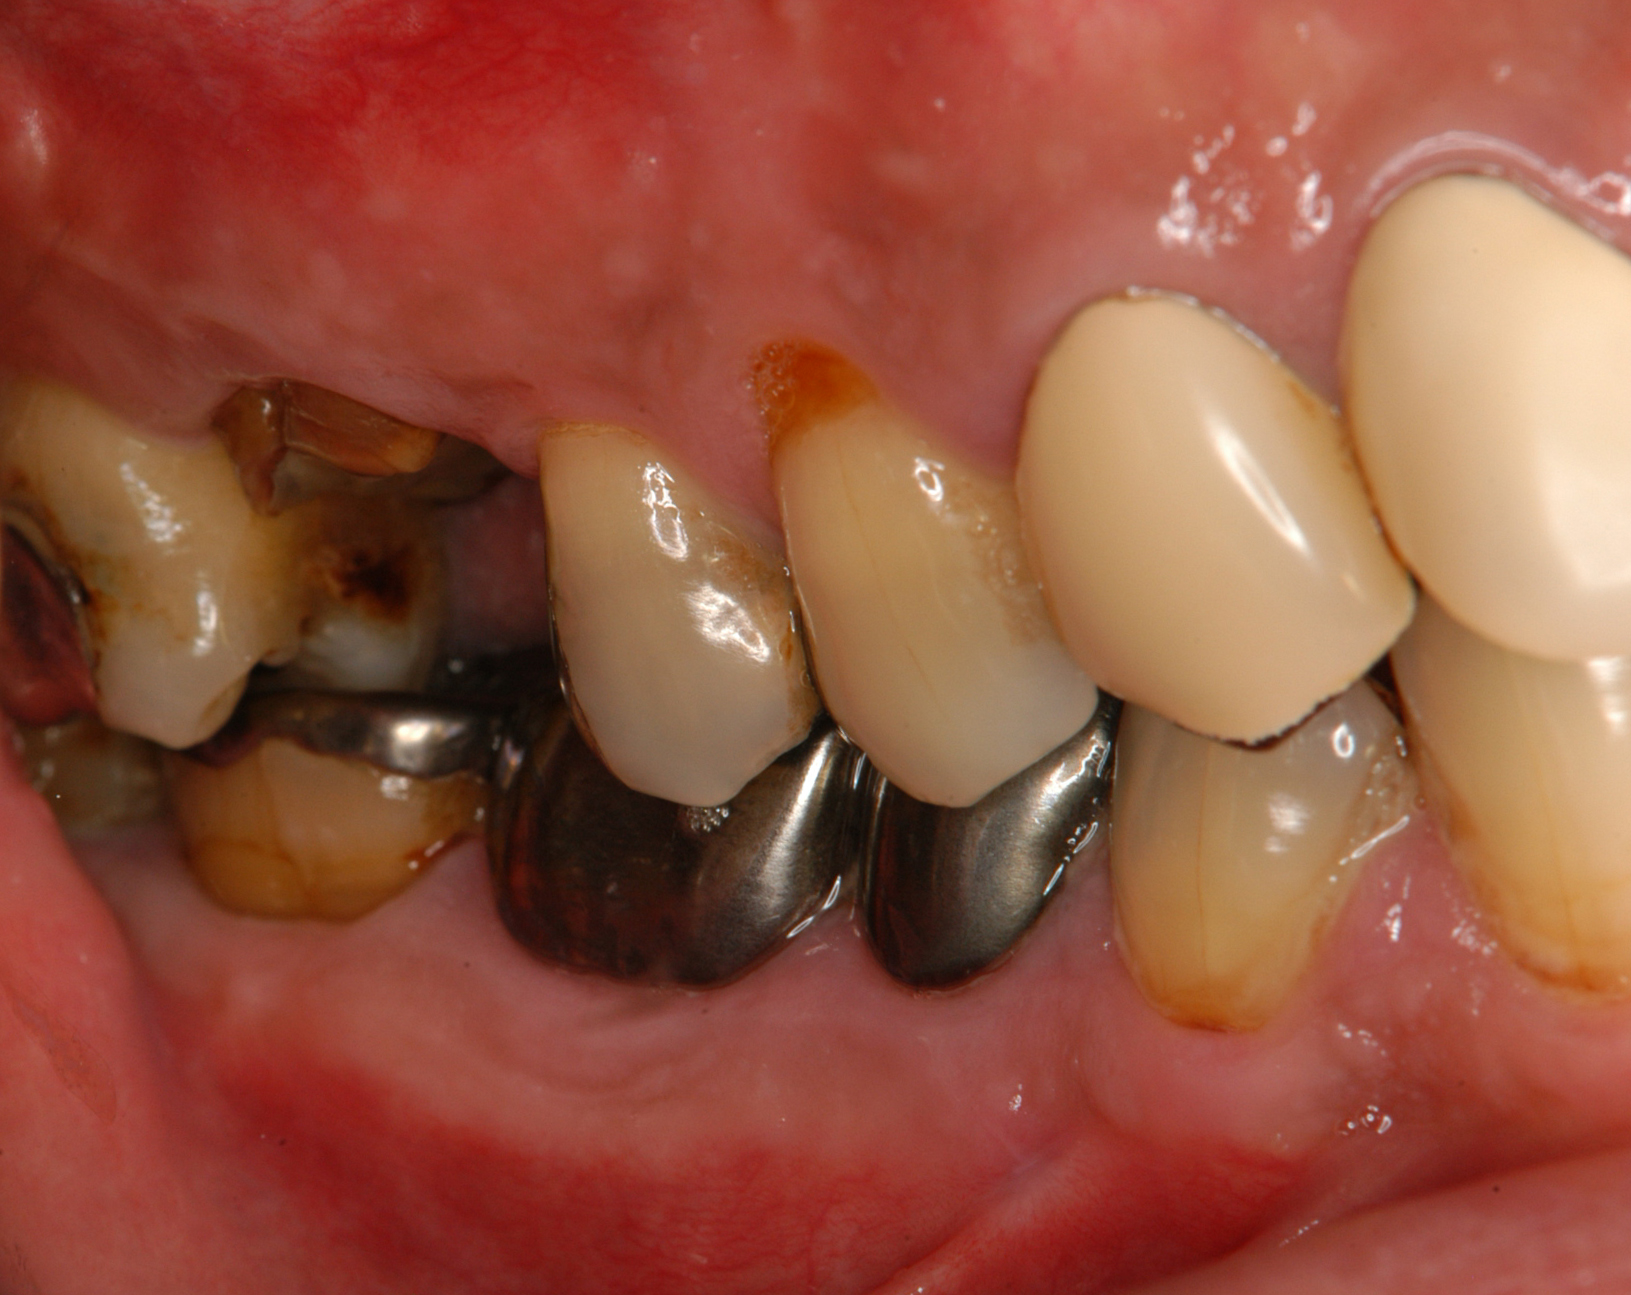 歯周炎患者の欠損補綴にインプラント治療を用いて包括的診療を行った一症例